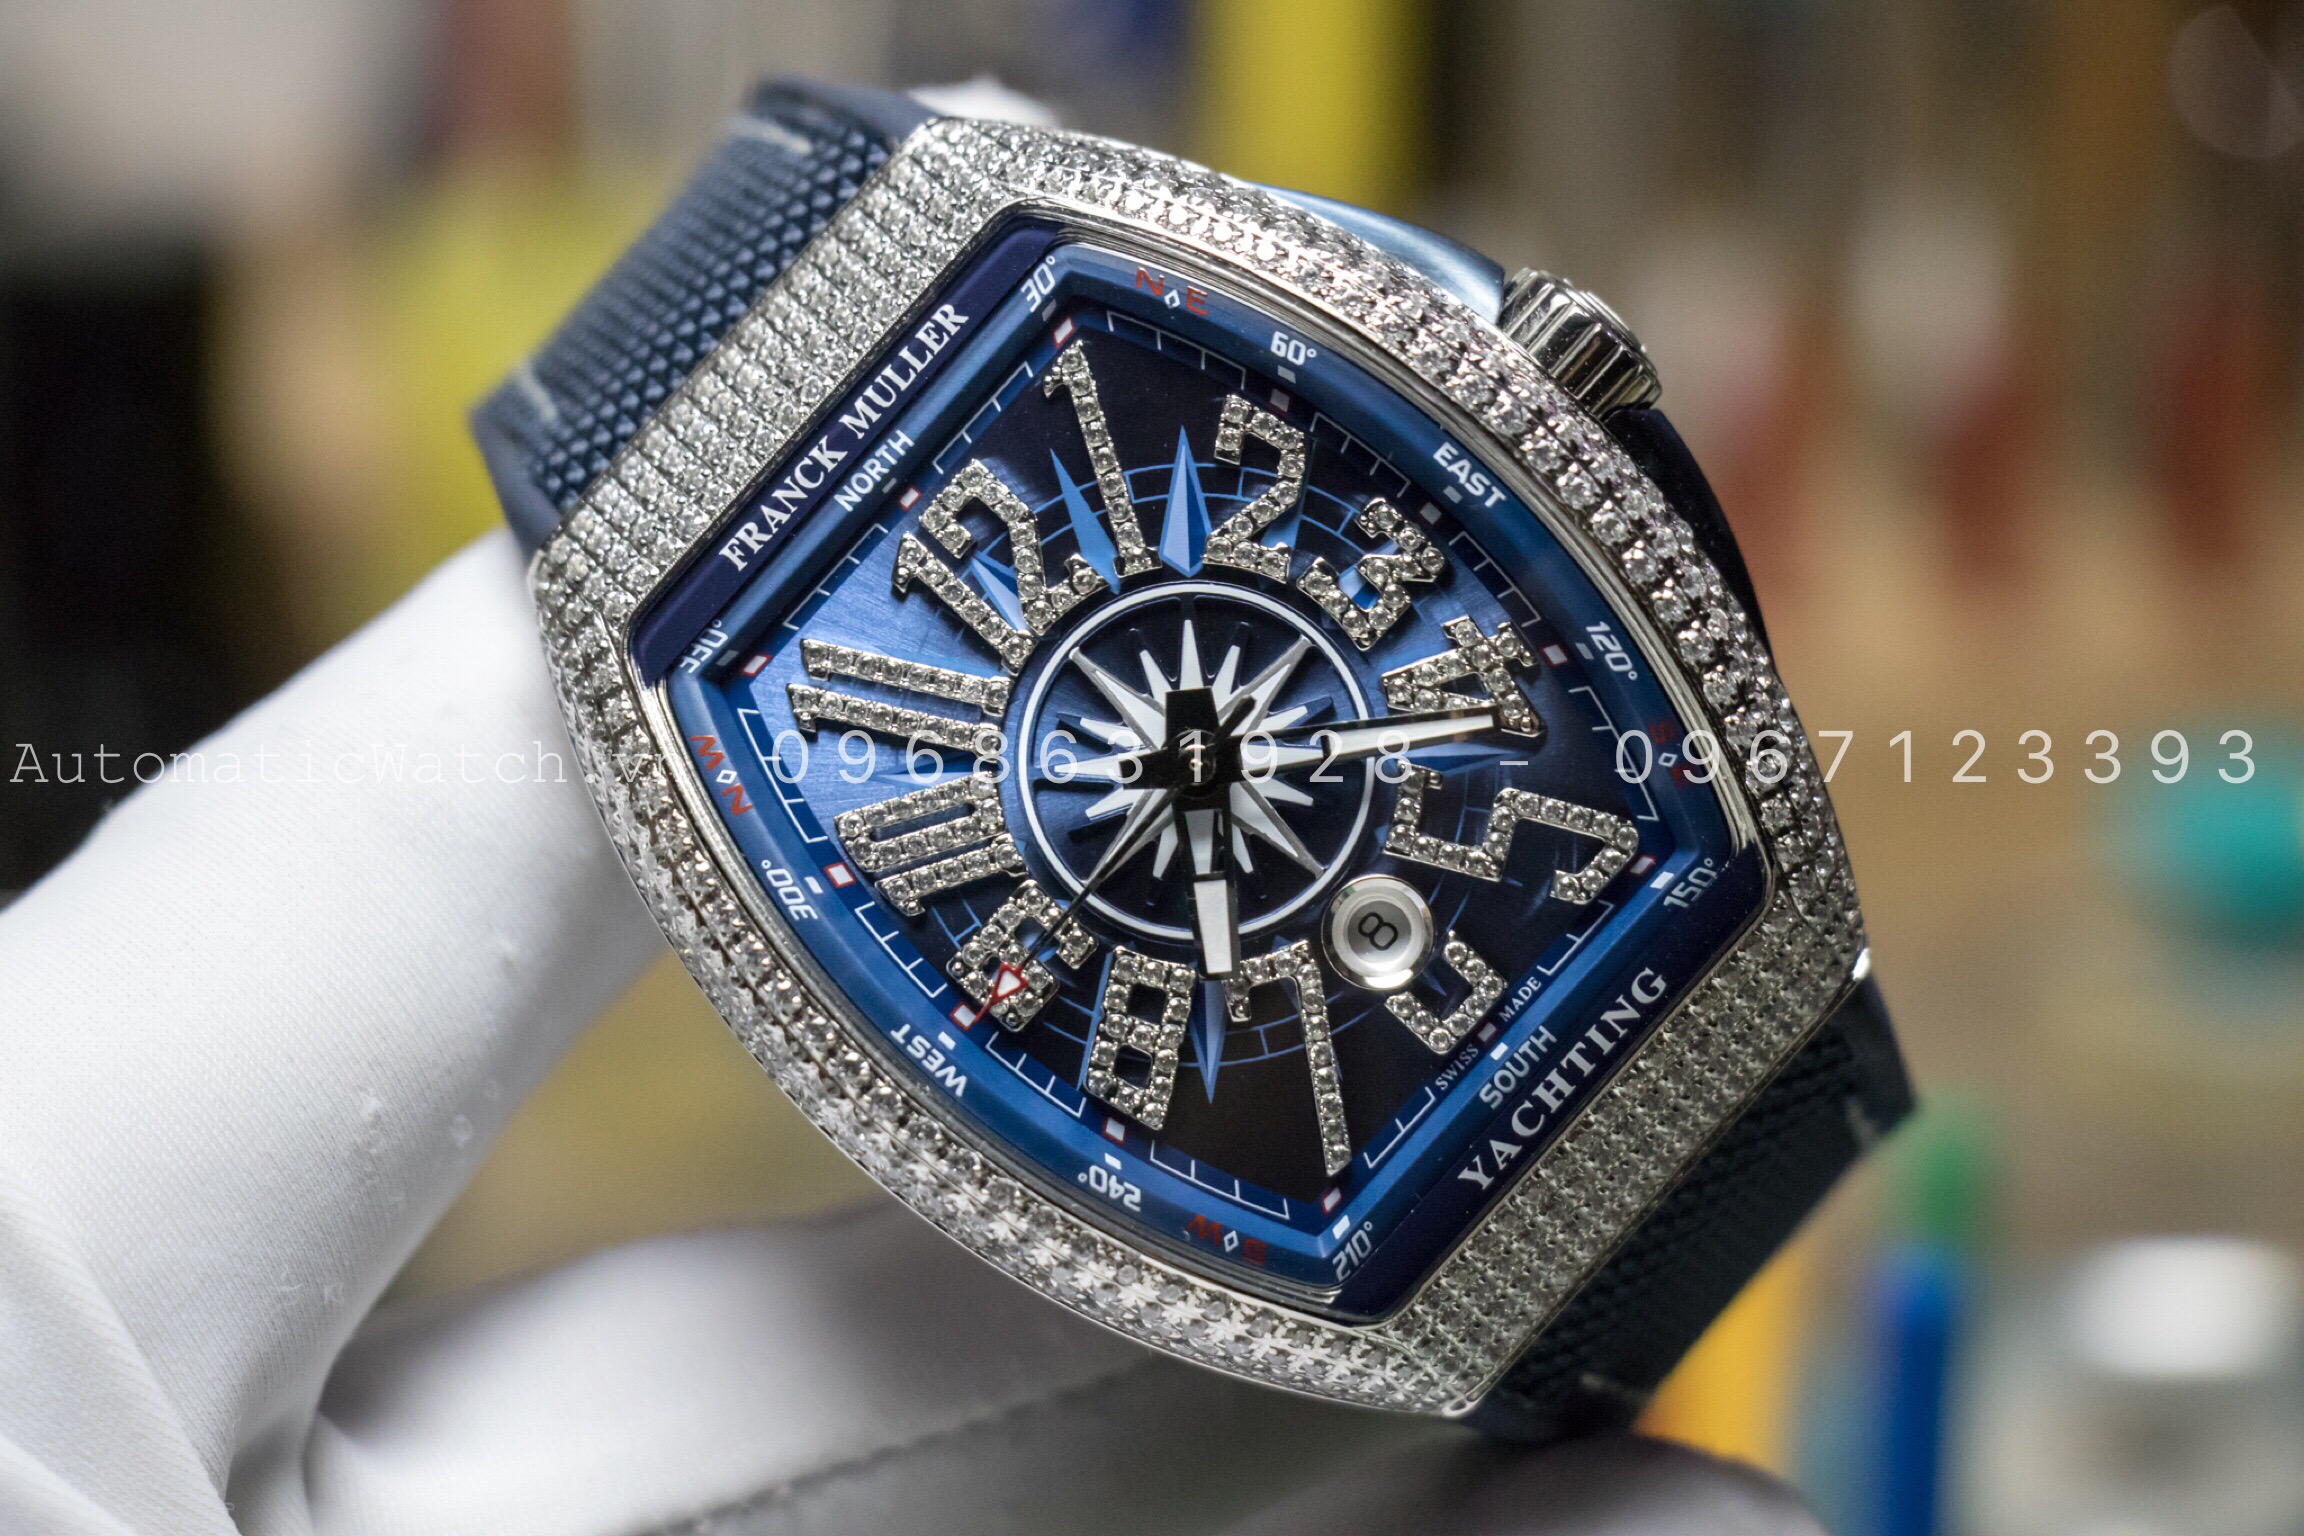 Đồng hồ Franck Muller chính hãng – đỉnh cao nghệ thuật chế tác tinh xảo